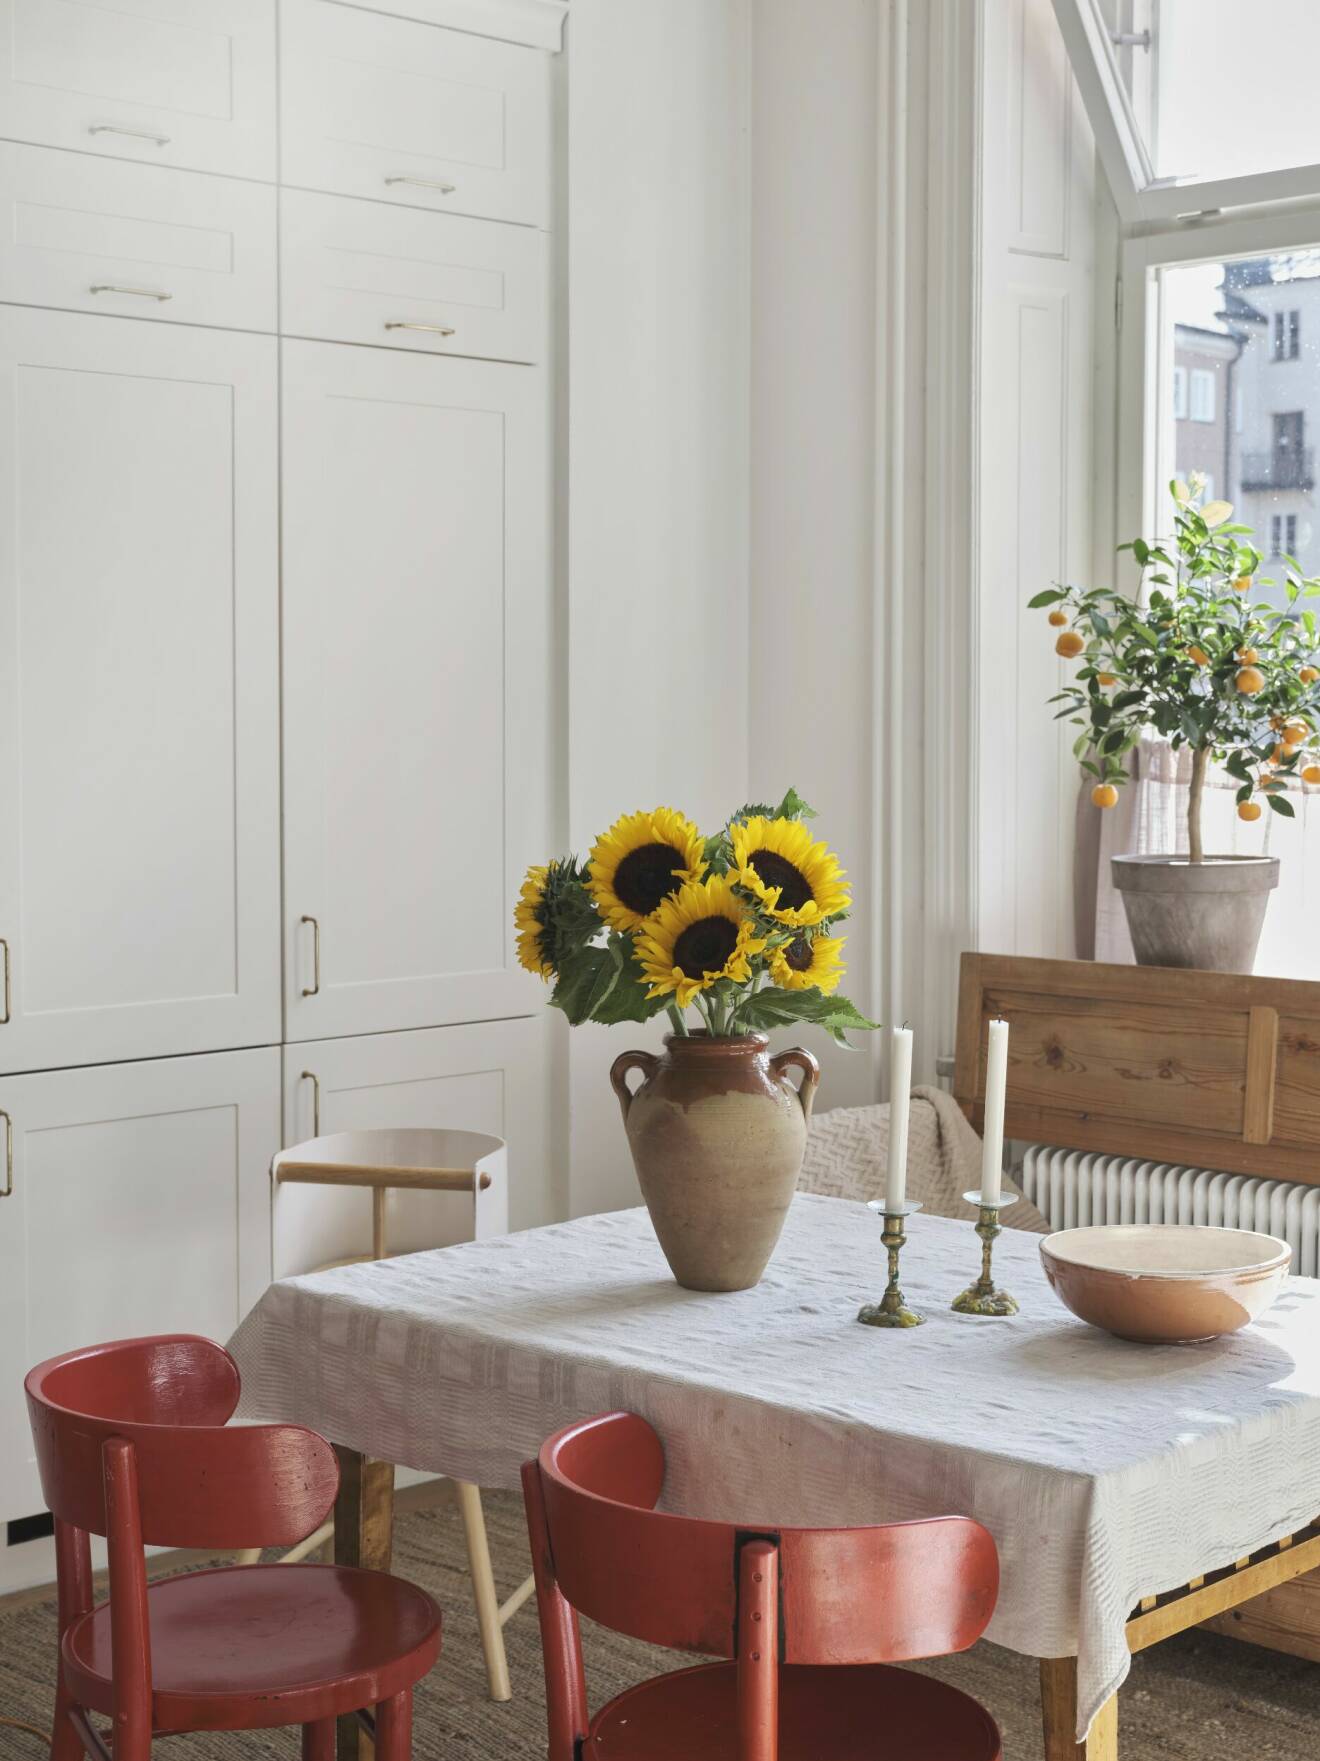 Hemma hos Sofia Wood i Norrköping, köket är fyllt av liv.